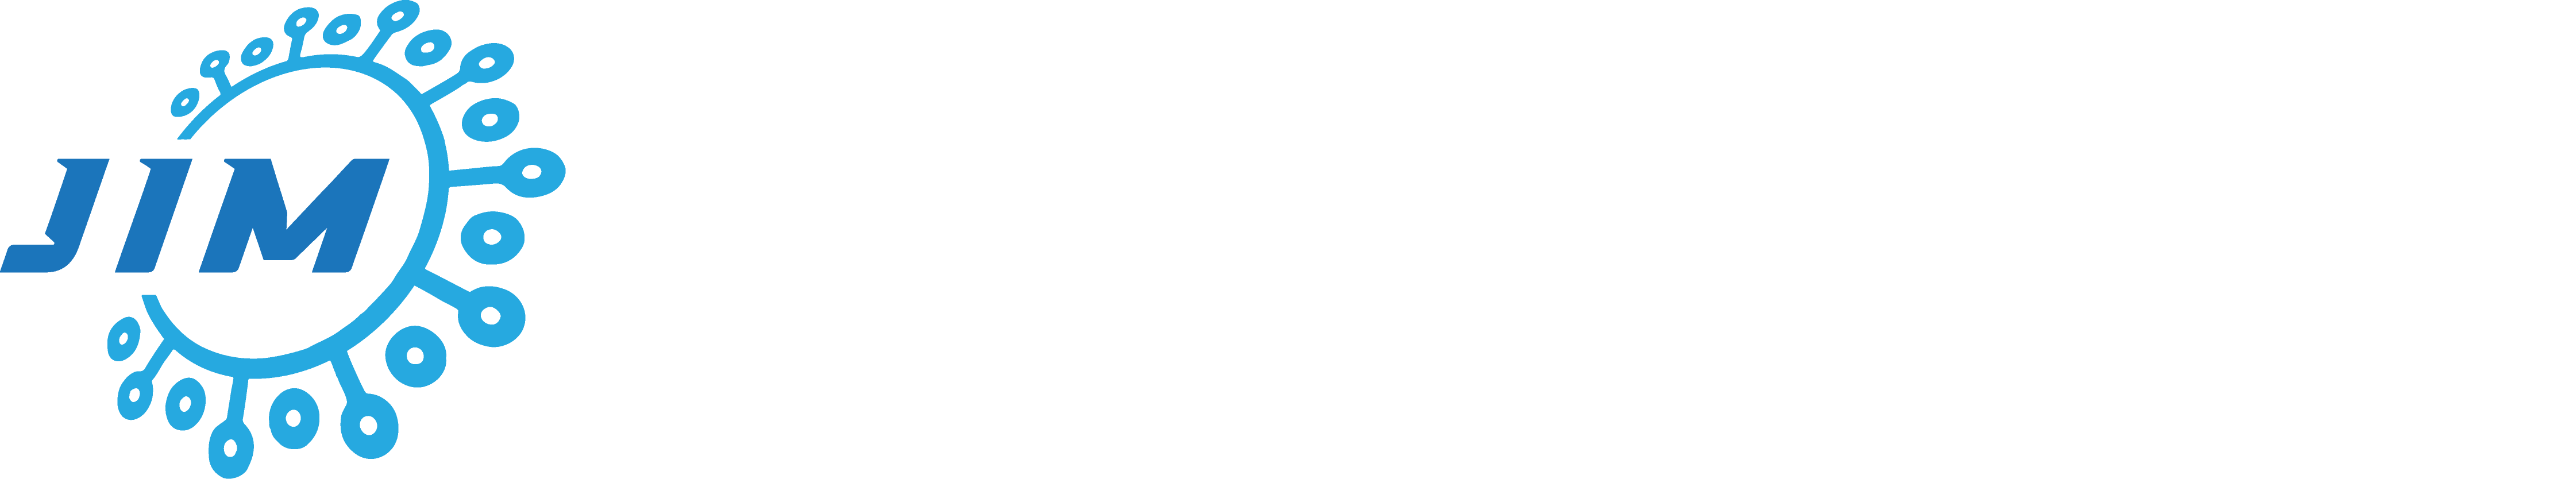 Jurnal Informatika dan Multimedia